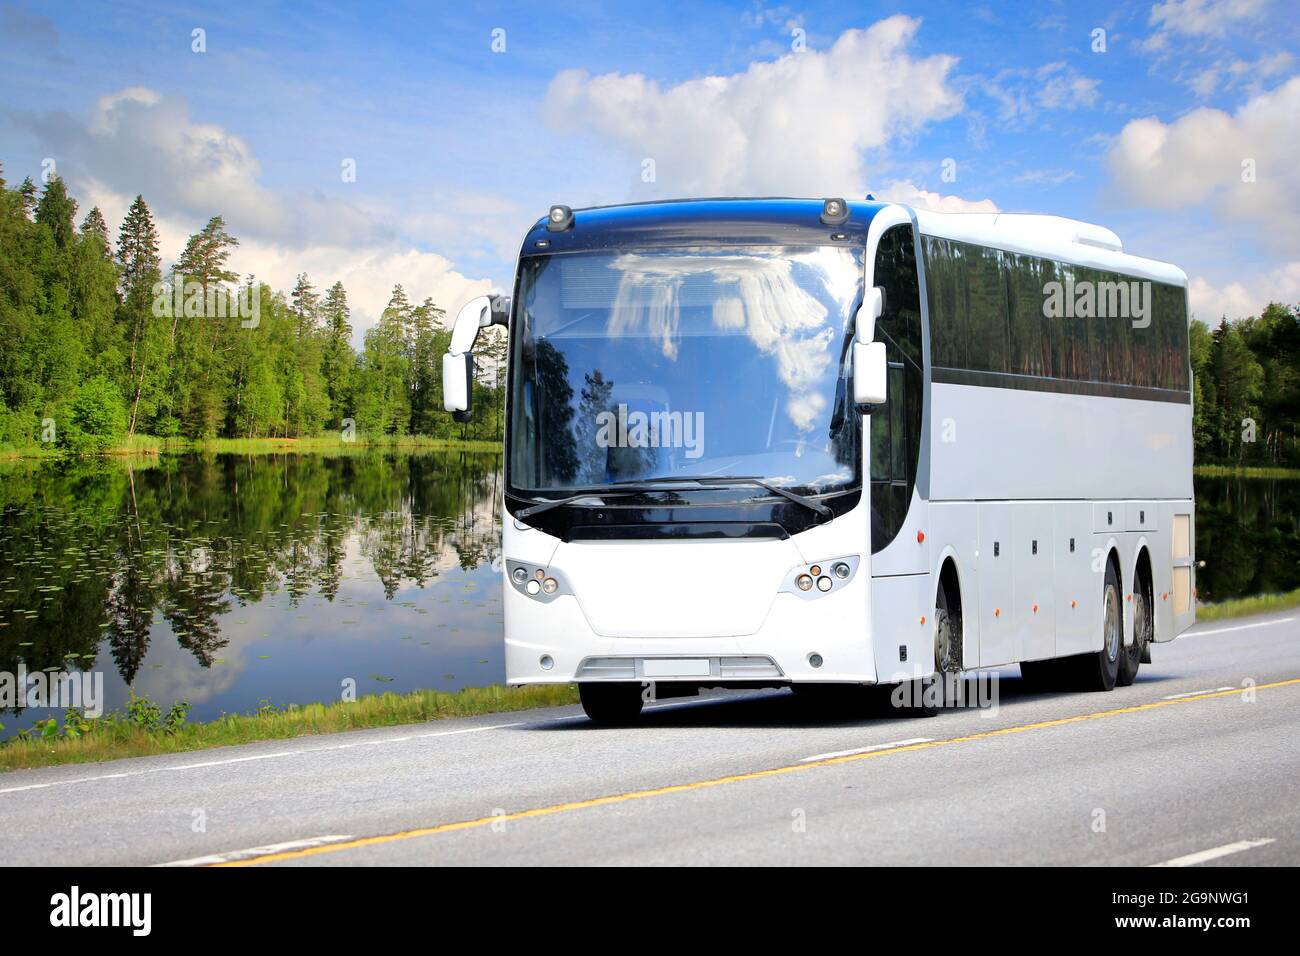 Weißer Reisebus fährt auf der Autobahn durch die ländliche Landschaft eines ruhigen Sees, grünen Waldes und blauen Himmels mit fairweather-Wolken an einem Sommertag. Stockfoto